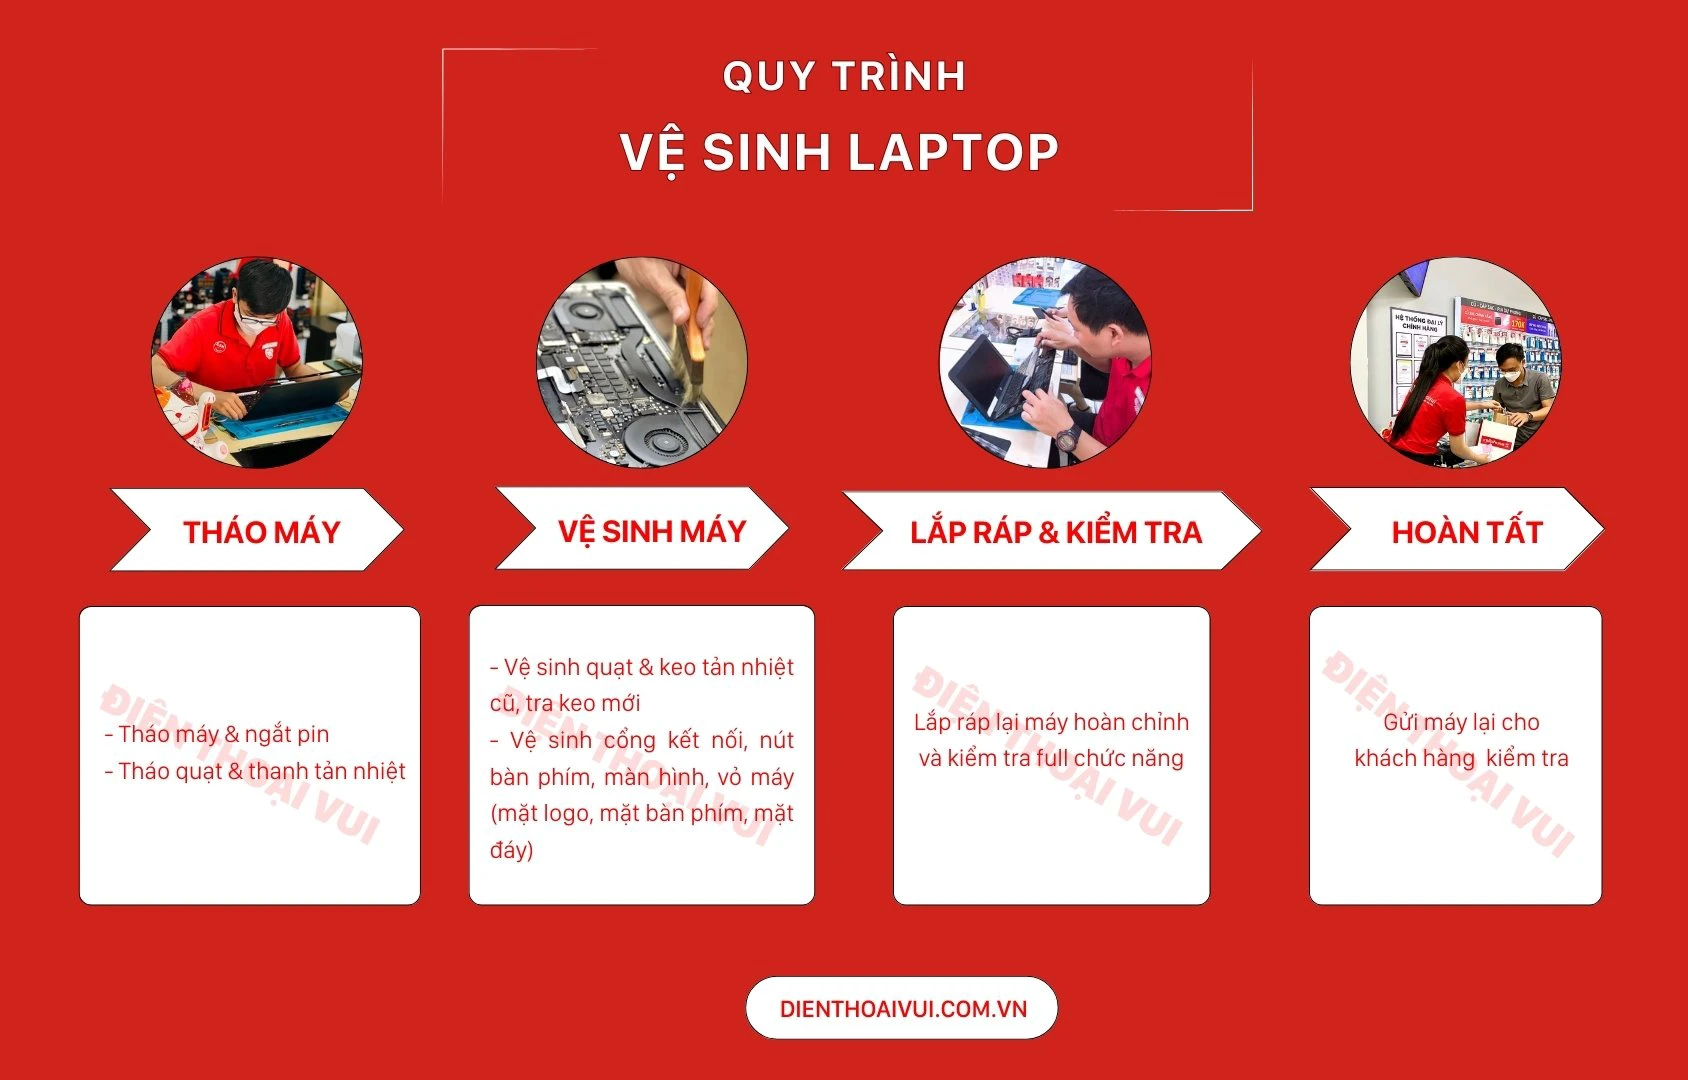 Quy trình vệ sinh laptop tại Điện Thoại Vui Quận Bình Tân